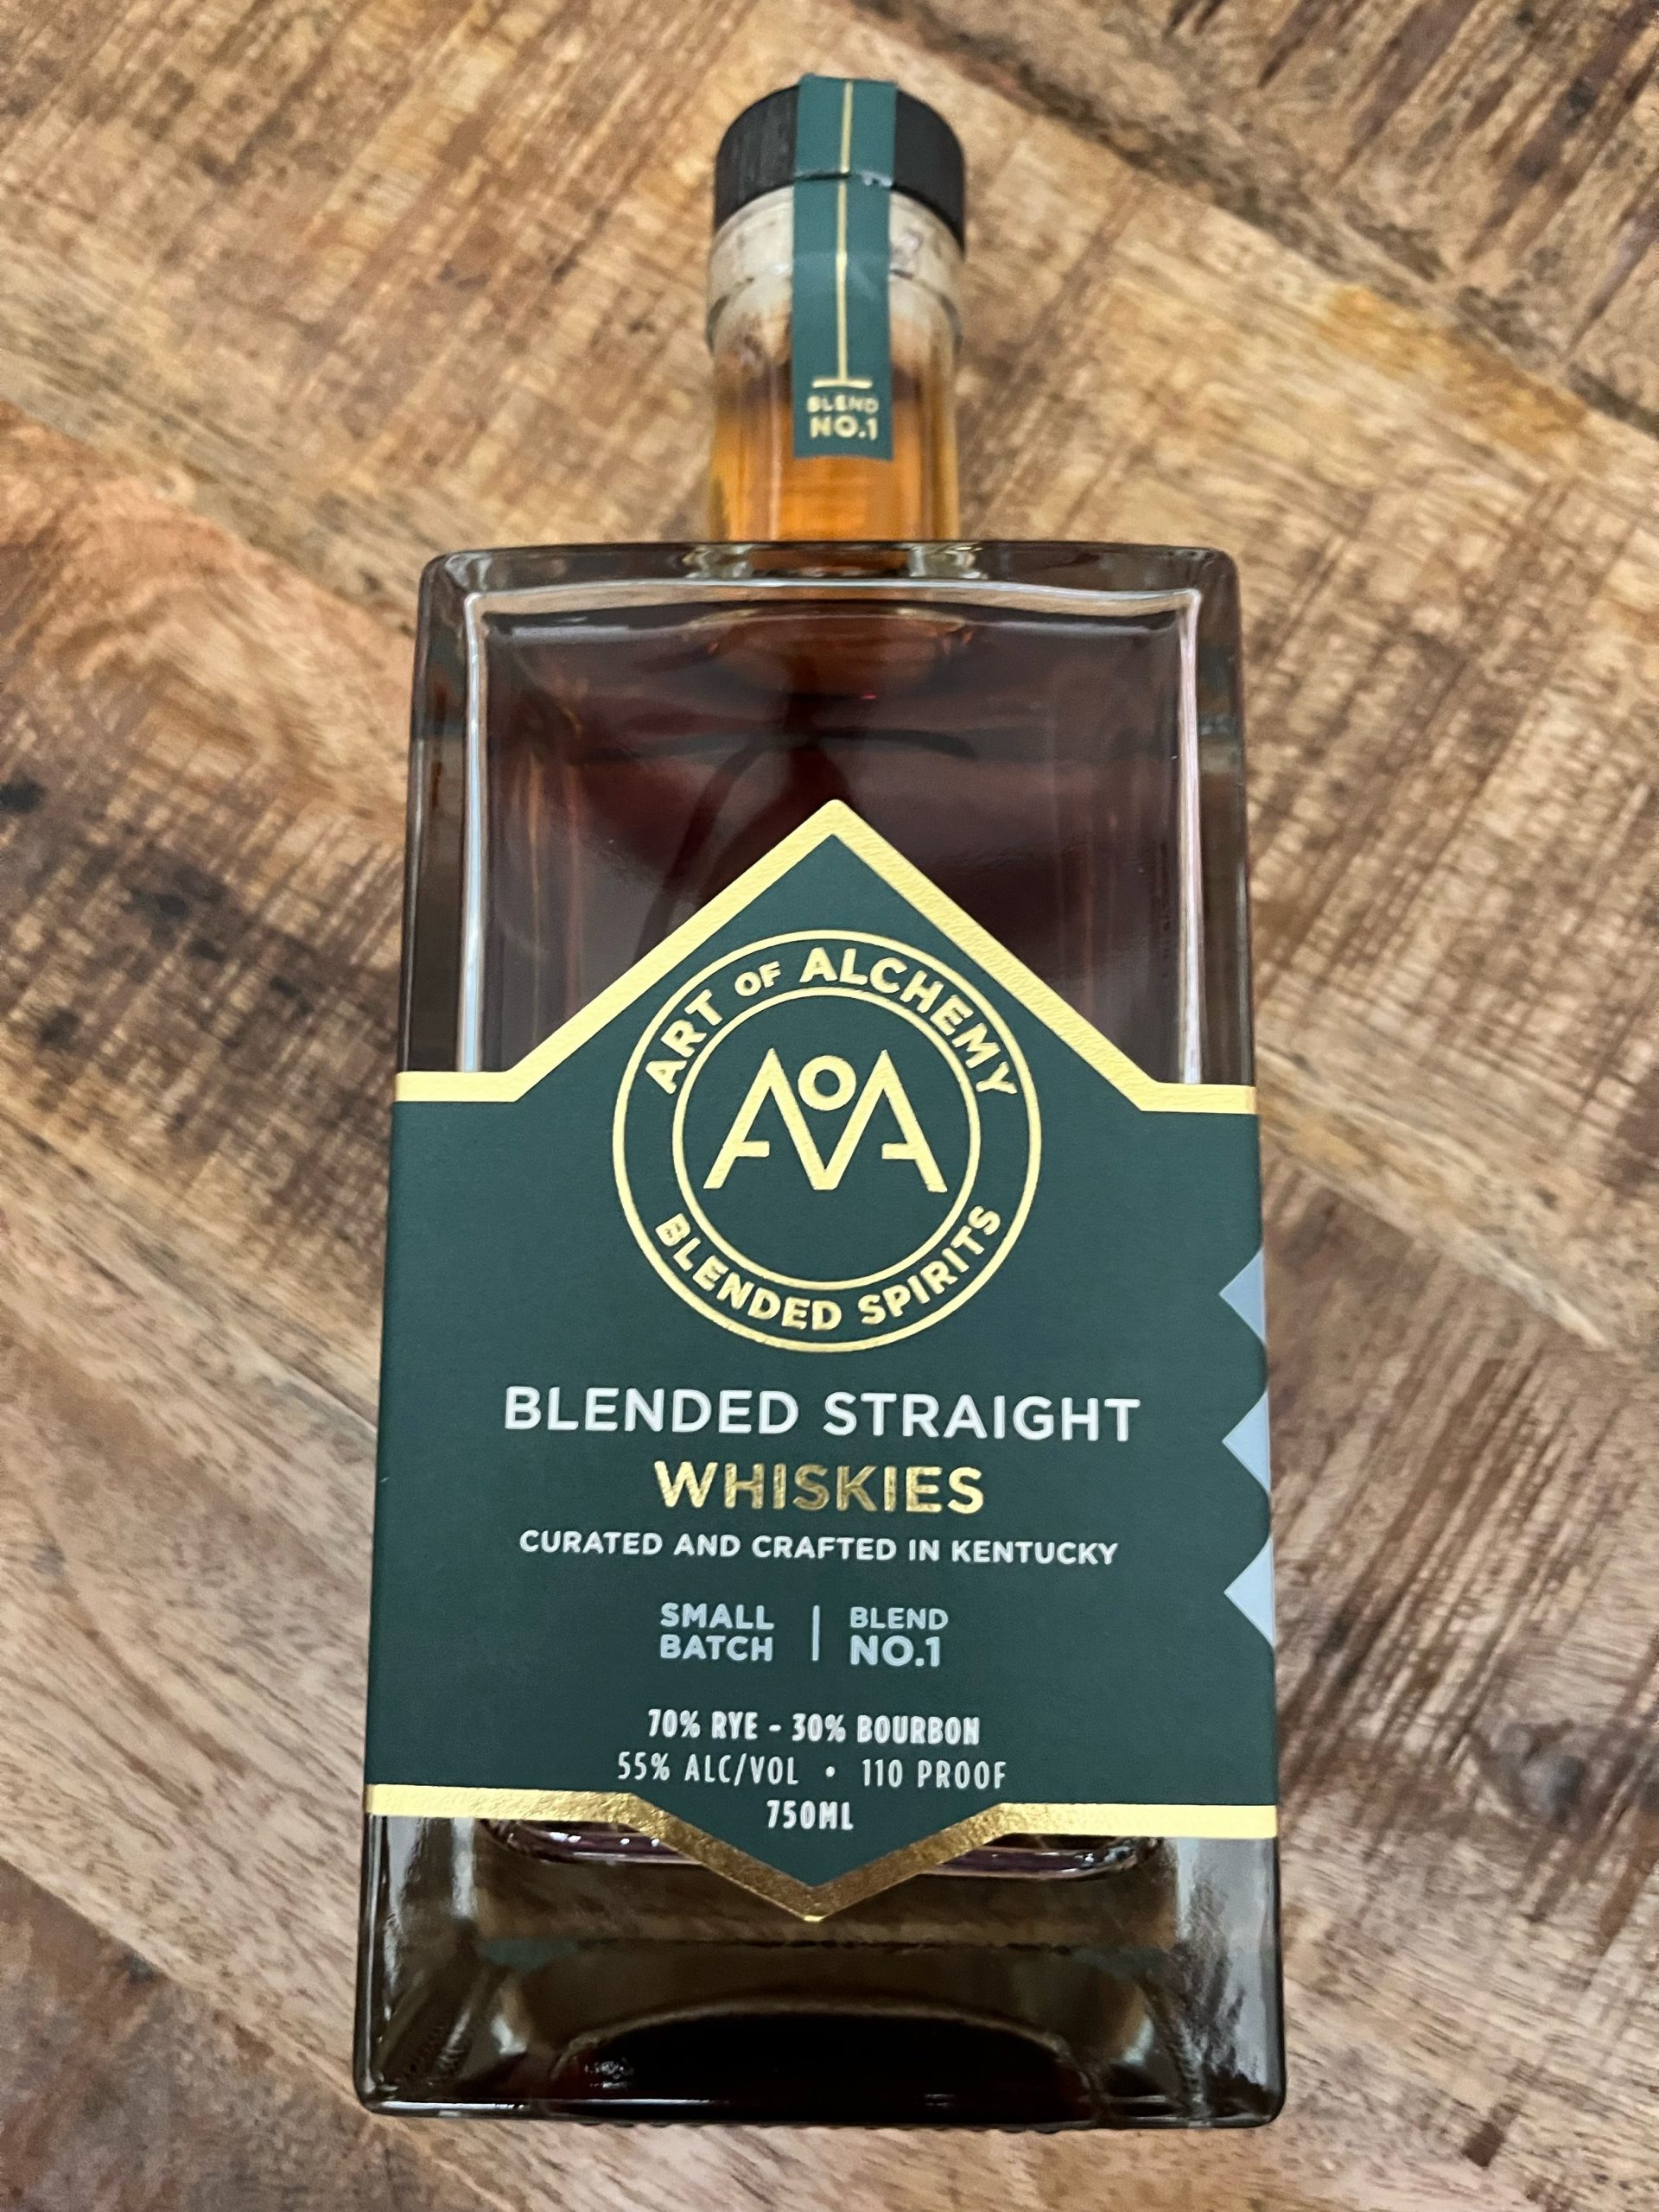 Art of Alchemy Blend of Straight Whiskies No1 750ml